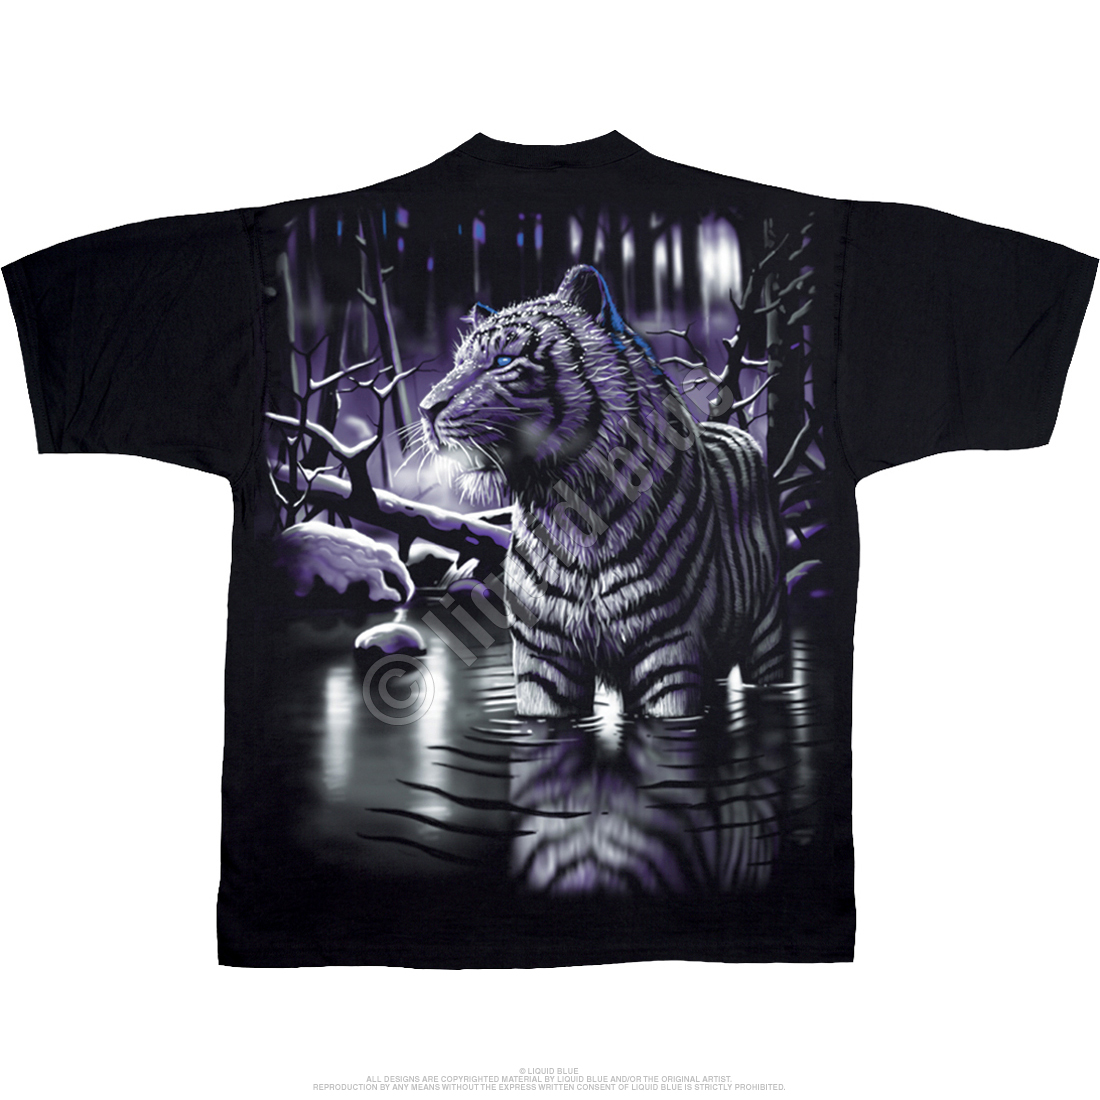 Liquid Blue Tiger Black T-Shirt - S